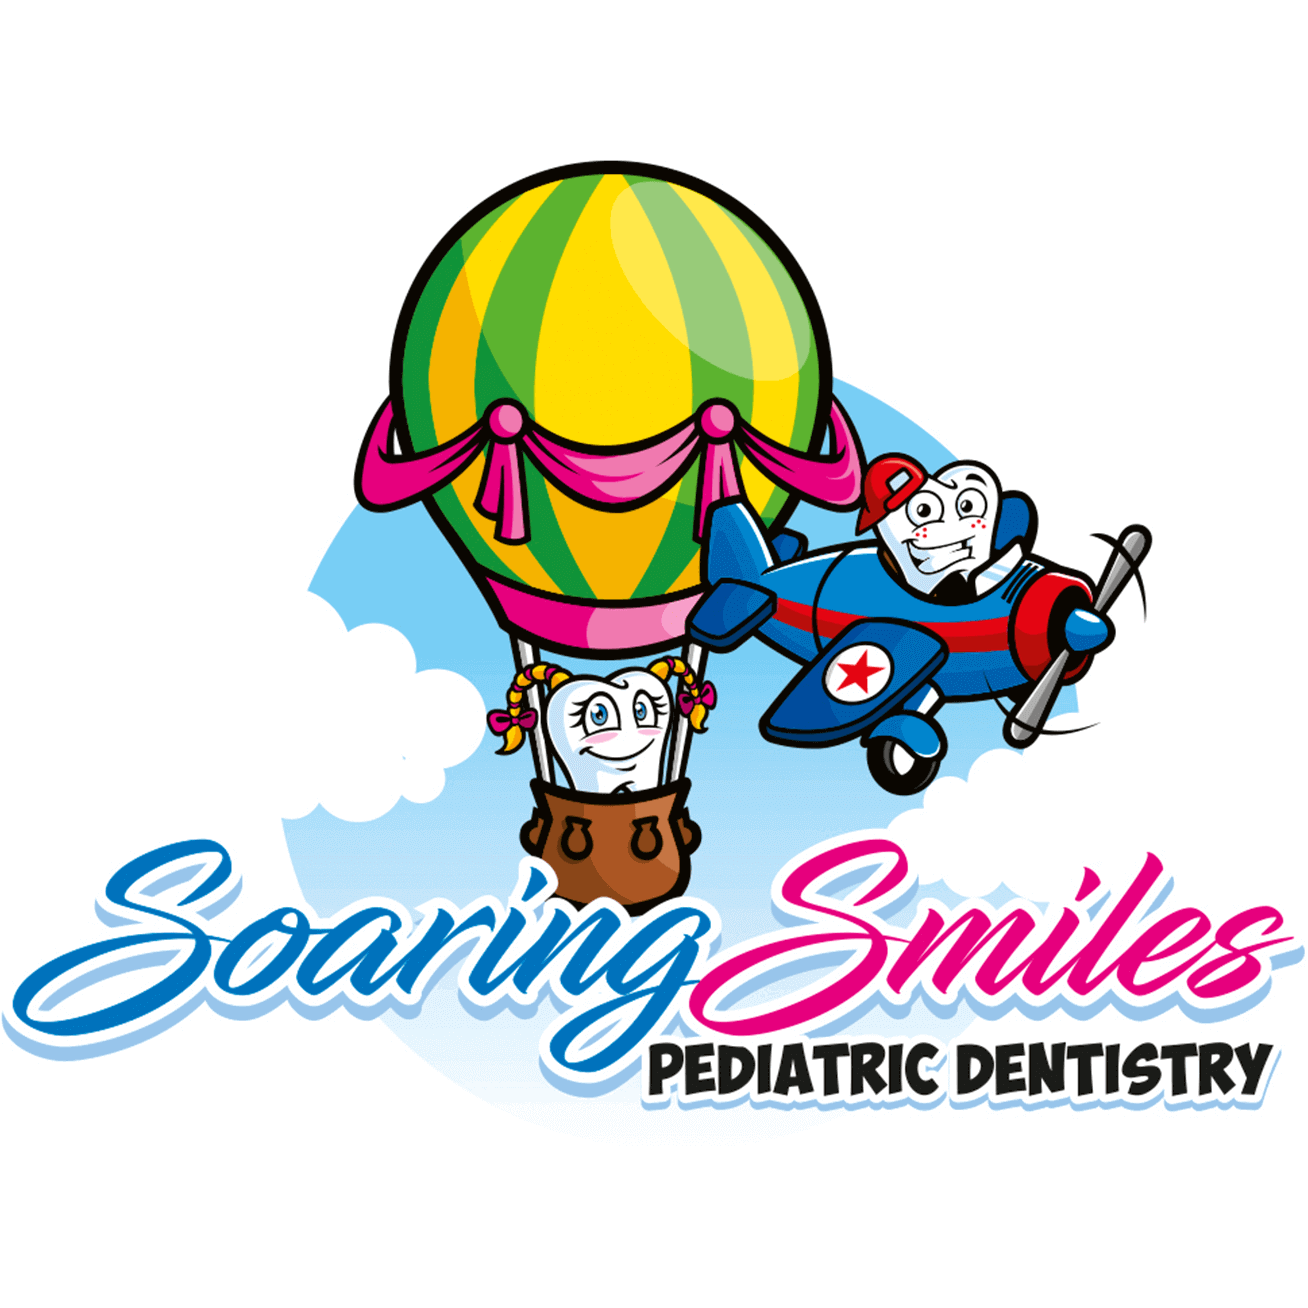 Soaring Smiles Pediatric Dentistry